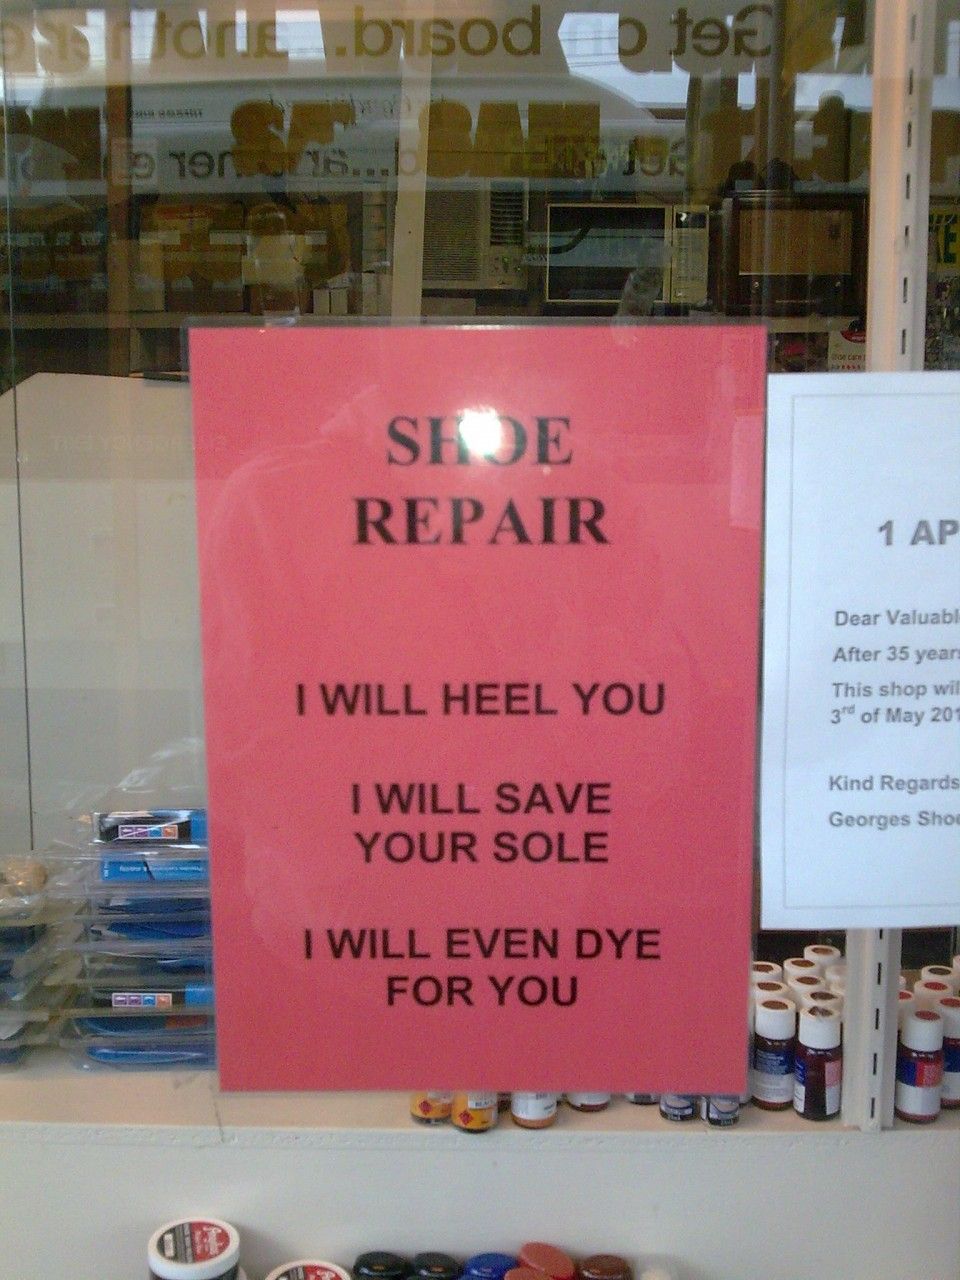 This shoe repair shop sign